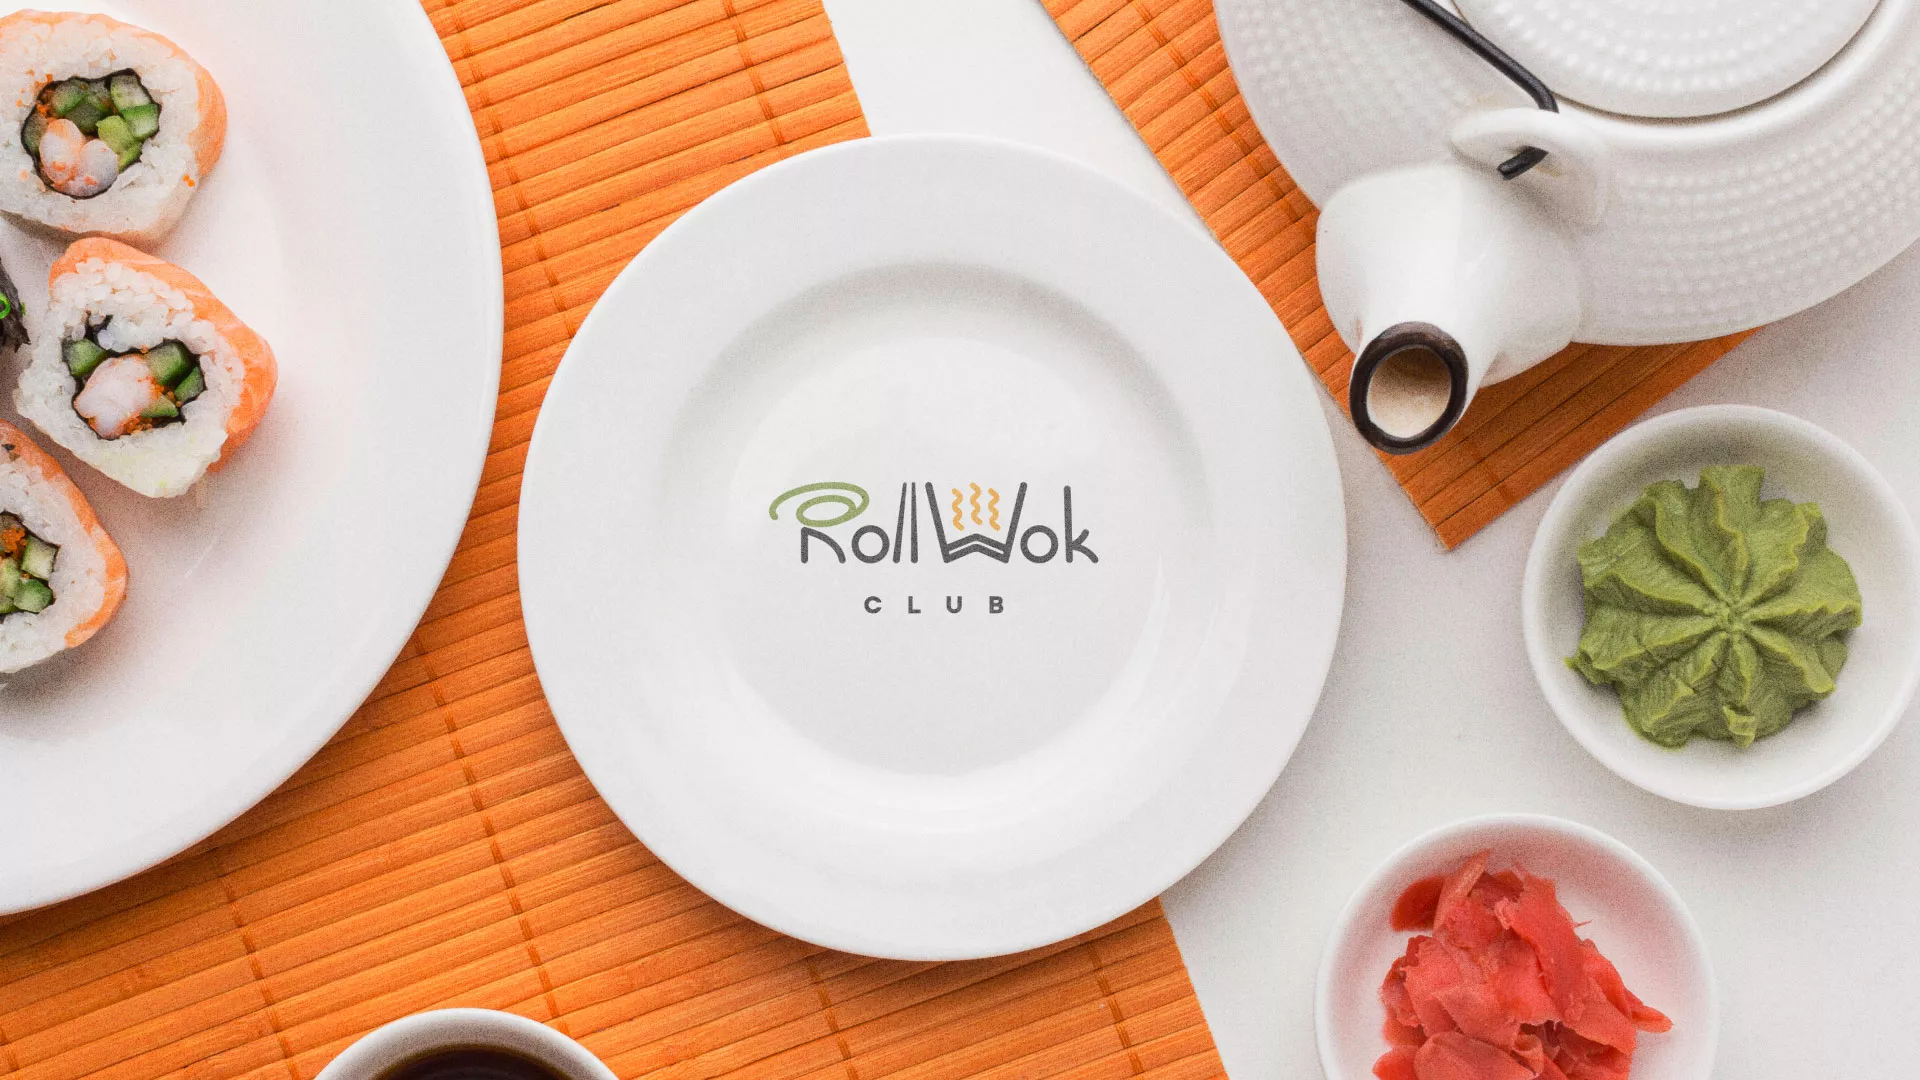 Разработка логотипа и фирменного стиля суши-бара «Roll Wok Club» в Гремячинске